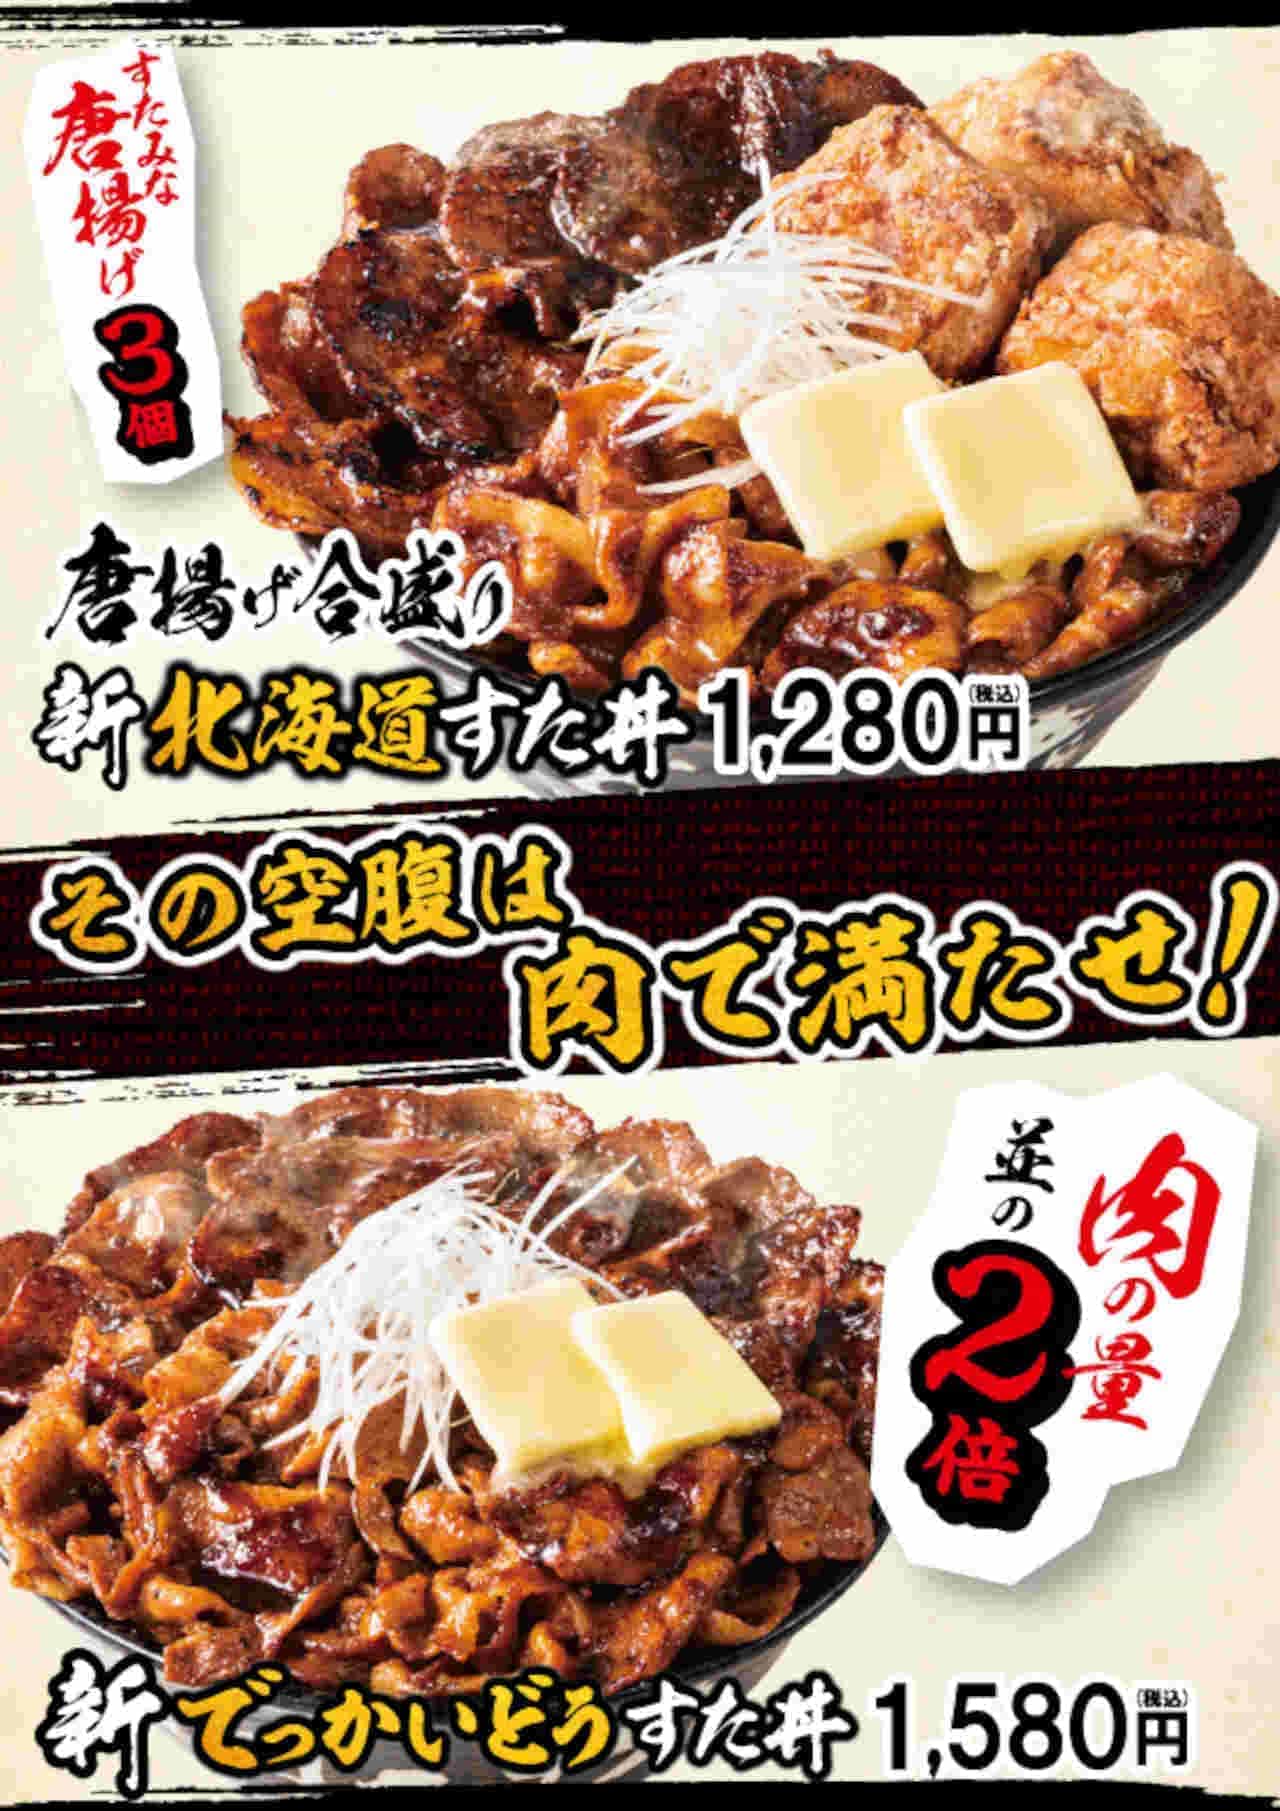 伝説のすた丼屋「唐揚げ合盛り新北海道すた丼」「新でっかいどうすた丼」